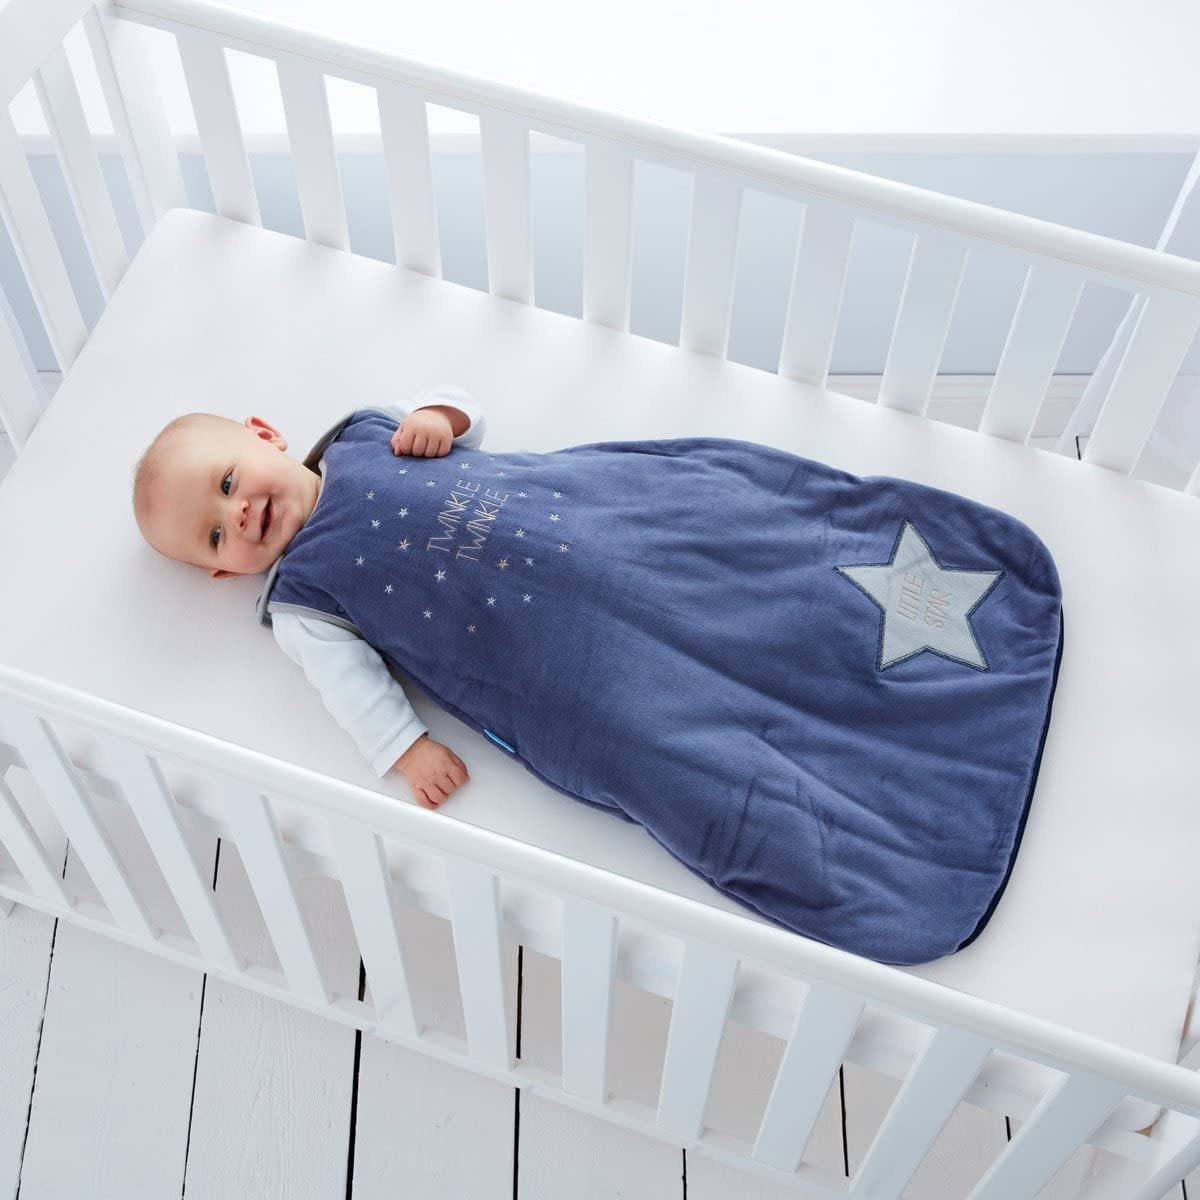 GroBag Bolsa de Dormir - 0 a 6 meses Anne Claire Baby Store 